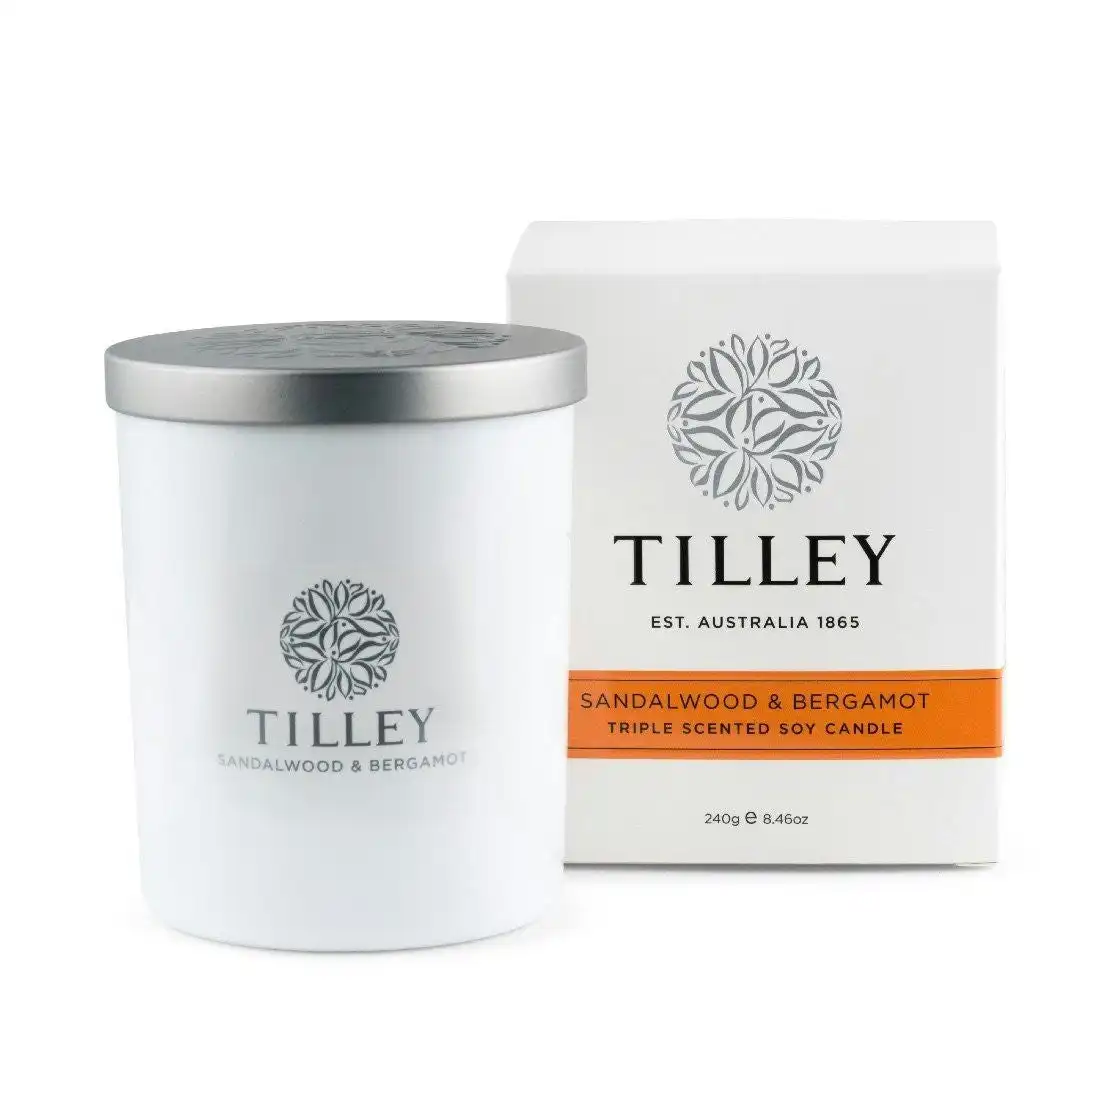 Tilley Classic White - Soy Candle 240g - Sandalwood & Bergamot